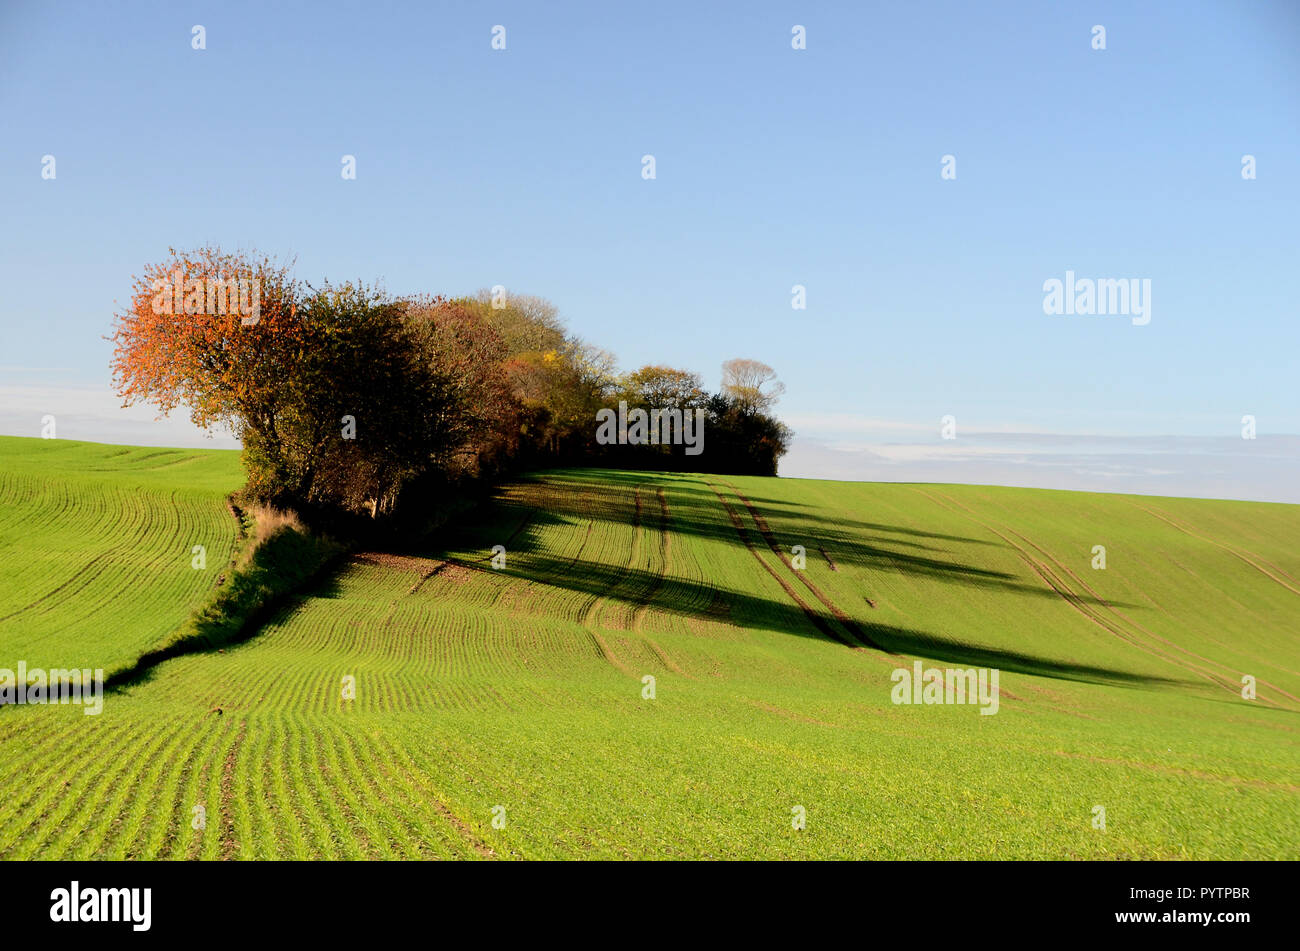 Landschaft mit Feldern mit Winter Pflanzen und Bäume im Herbst Farben, die niedrig stehende Sonne wirft lange Schatten. Stockfoto